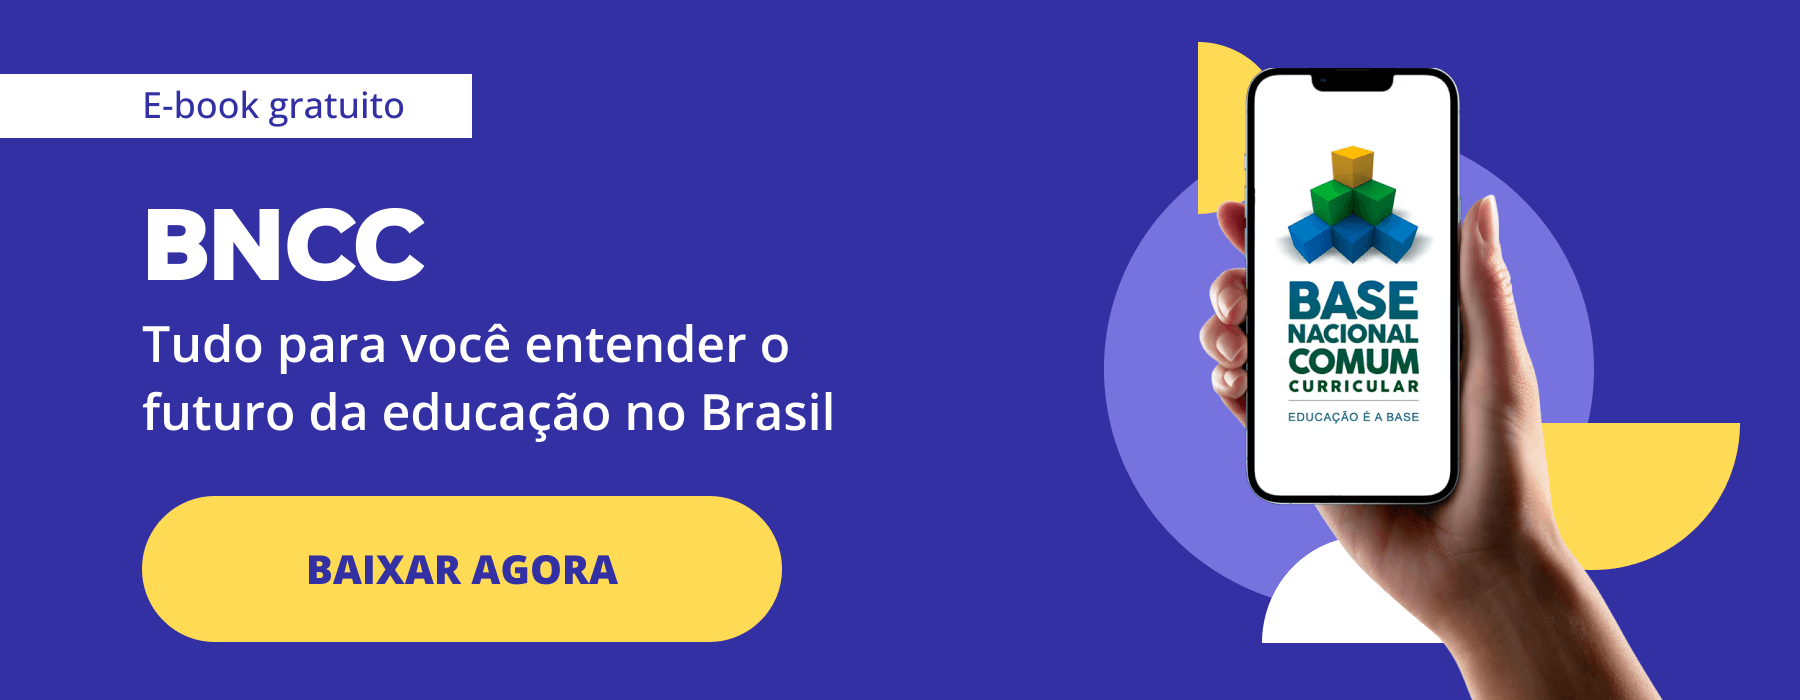 E-book gratuito: BNCC - Tudo para você entender o futuro da educação no Brasil. Clique aqui para baixar agora.